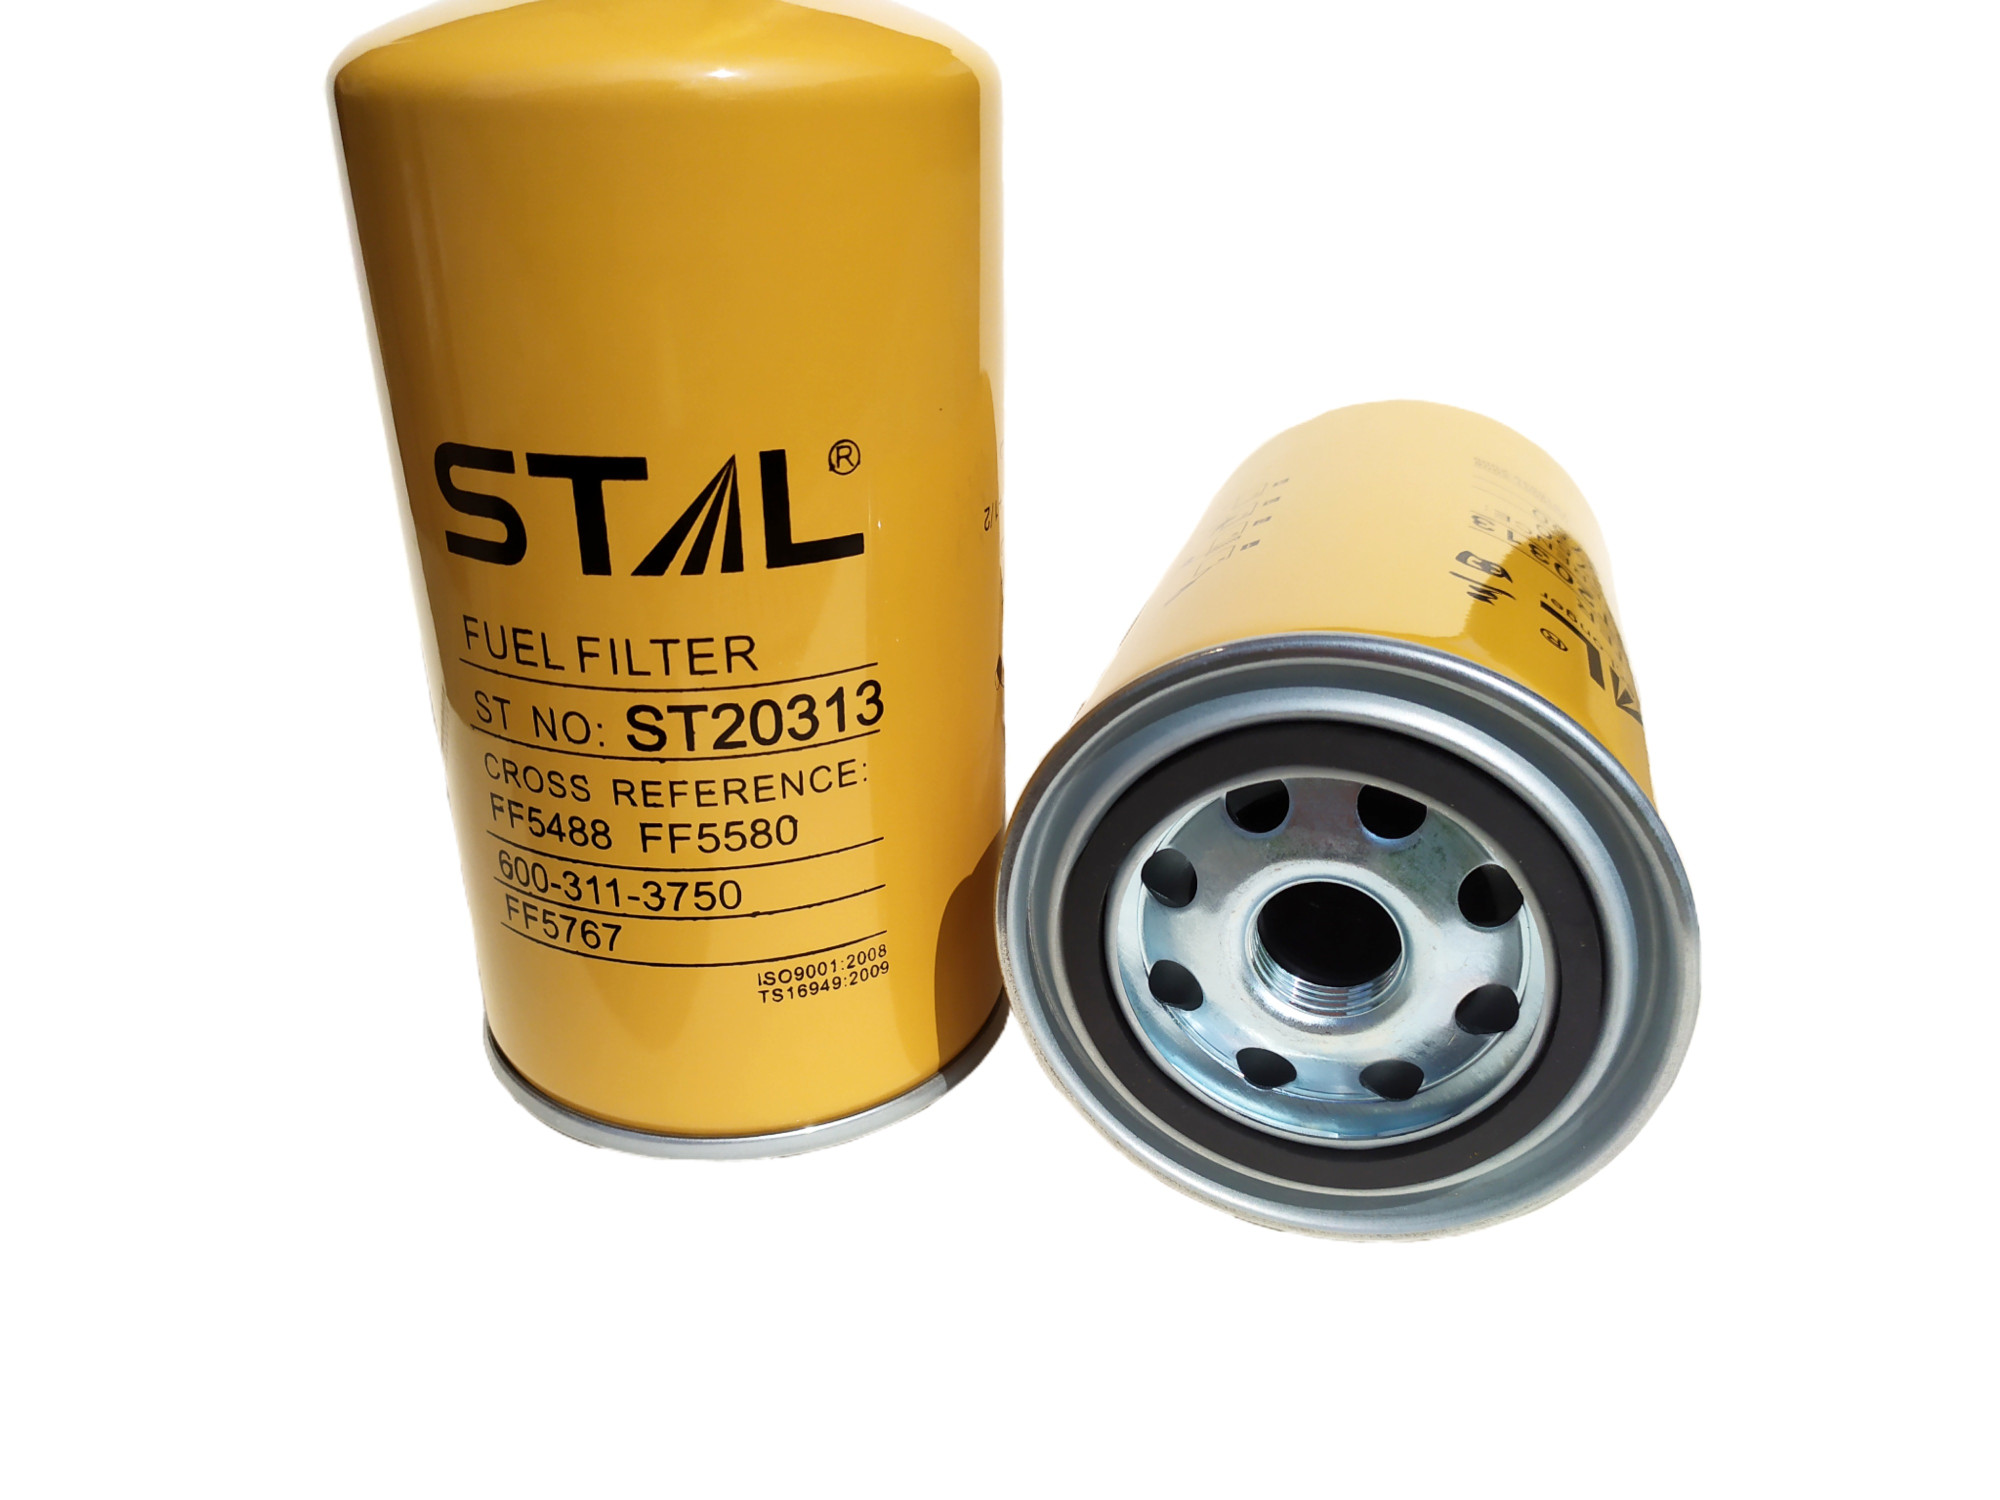 Фильтры STAL для авто и спецтехники: надежность и качество на службе вашего транспорта